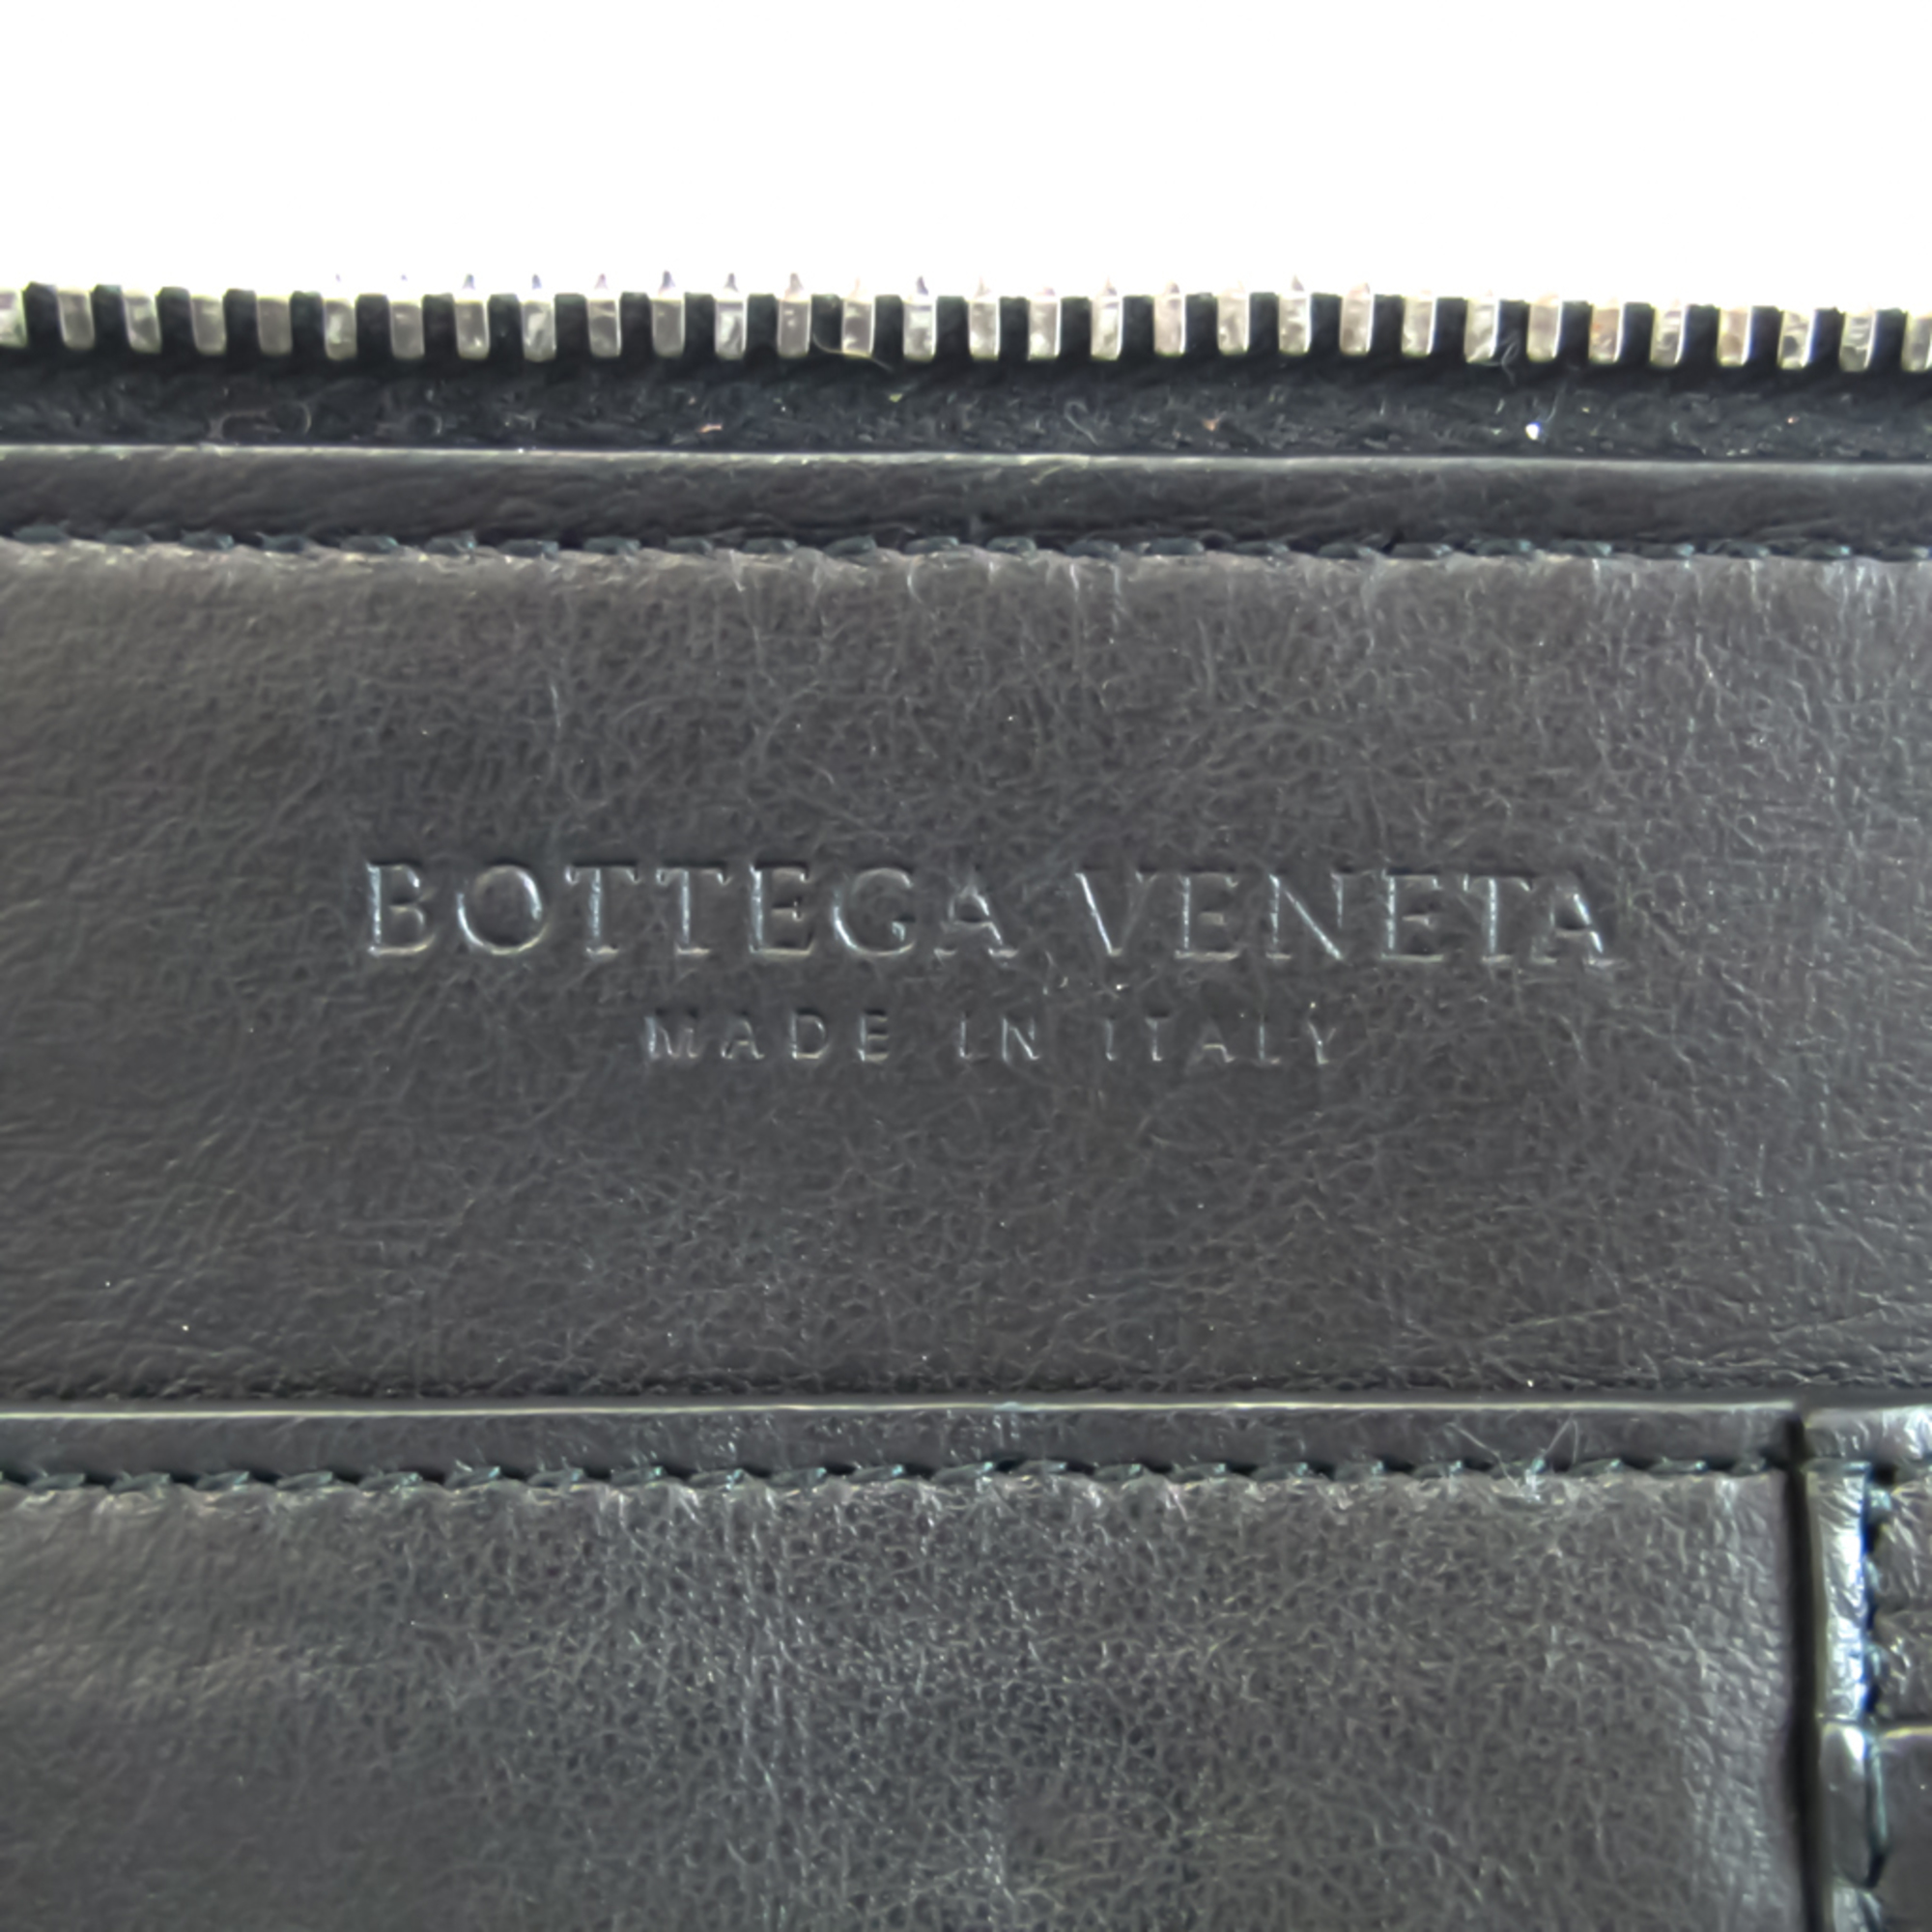 ボッテガ・ヴェネタ(Bottega Veneta) マルコポーロ ドキュメント 580472 VMAW1 メンズ レザー クラッチバッグ ブラック